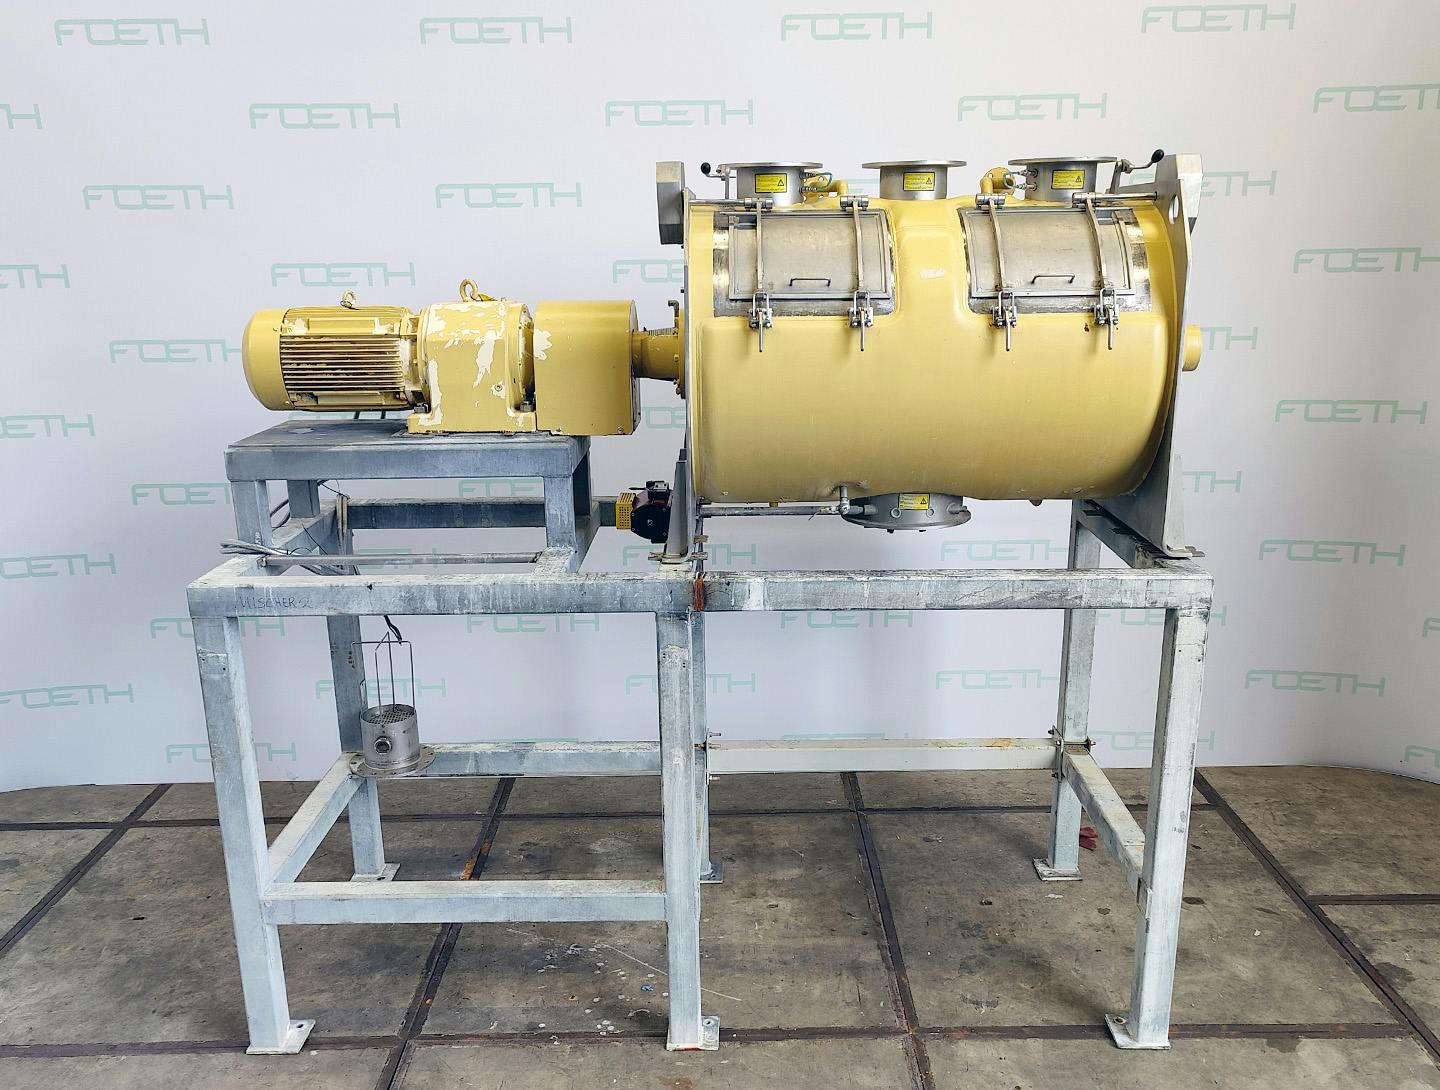 Loedige FKM-1600D - Misturador turbo para pós - image 6